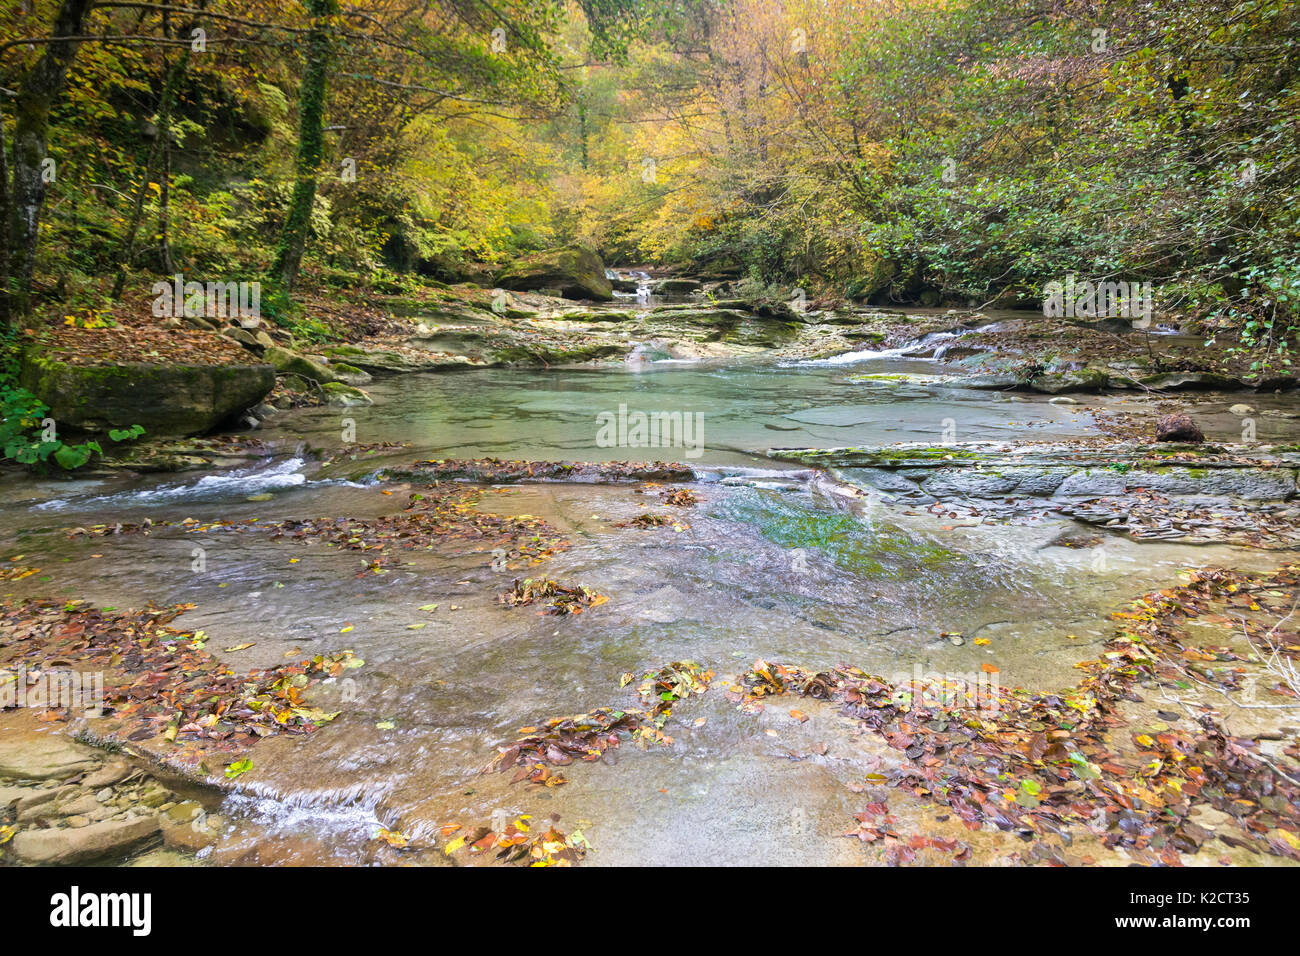 Ein Fluss fließt friedlich unter gelben Bäume im Wald im Herbst Stockfoto